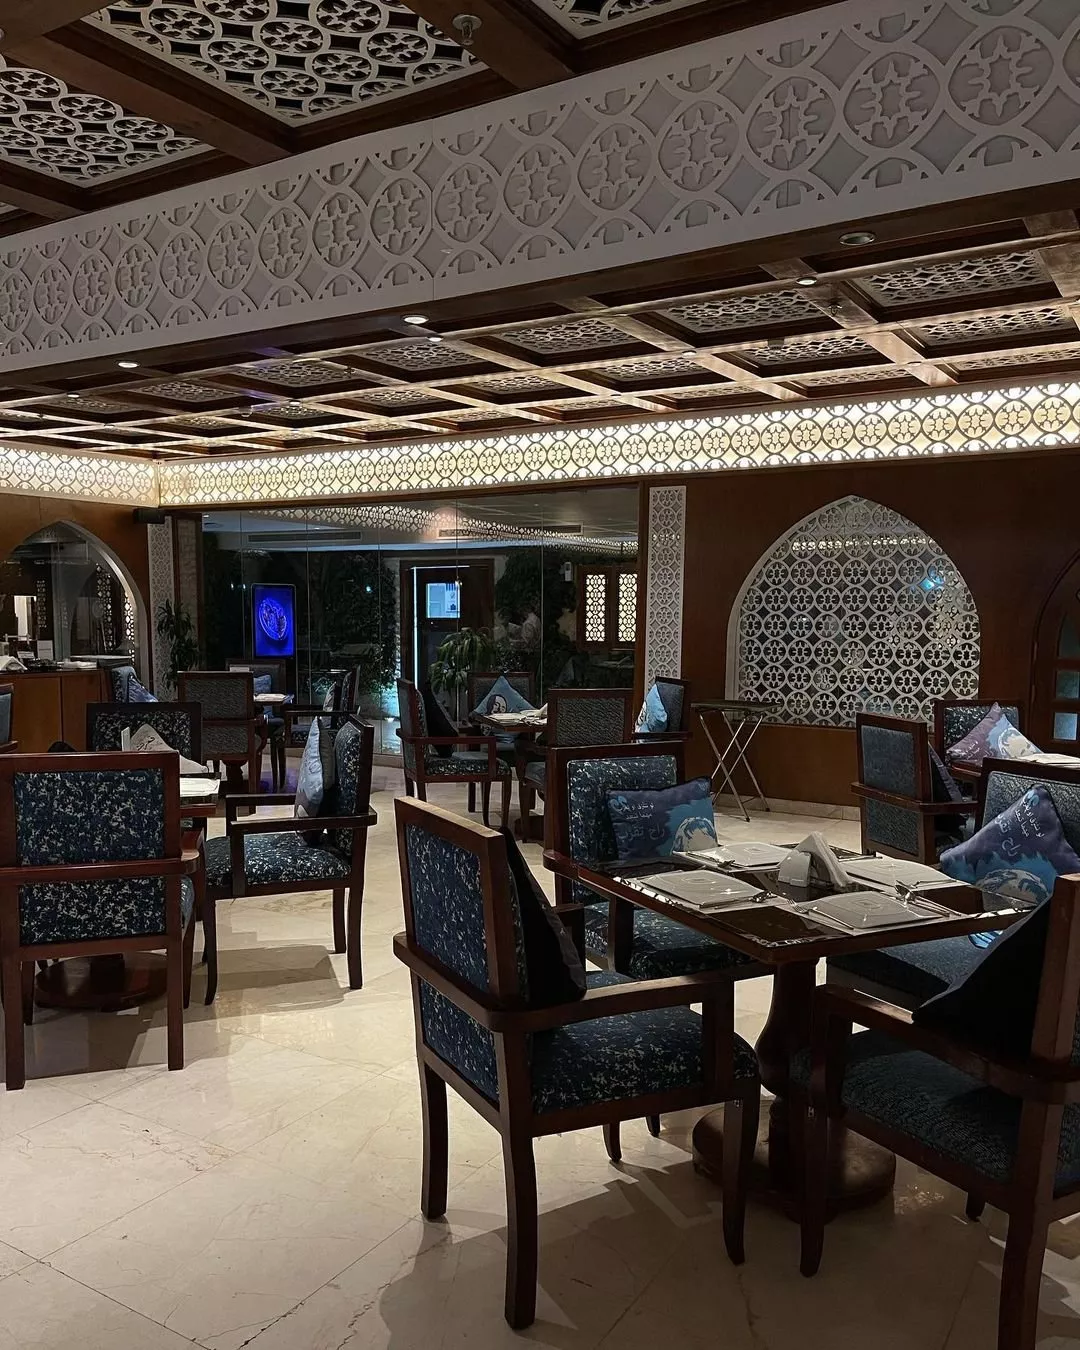 مطاعم وكافيهات في جدة تعرض مباريات كاس العالم قطر 2022